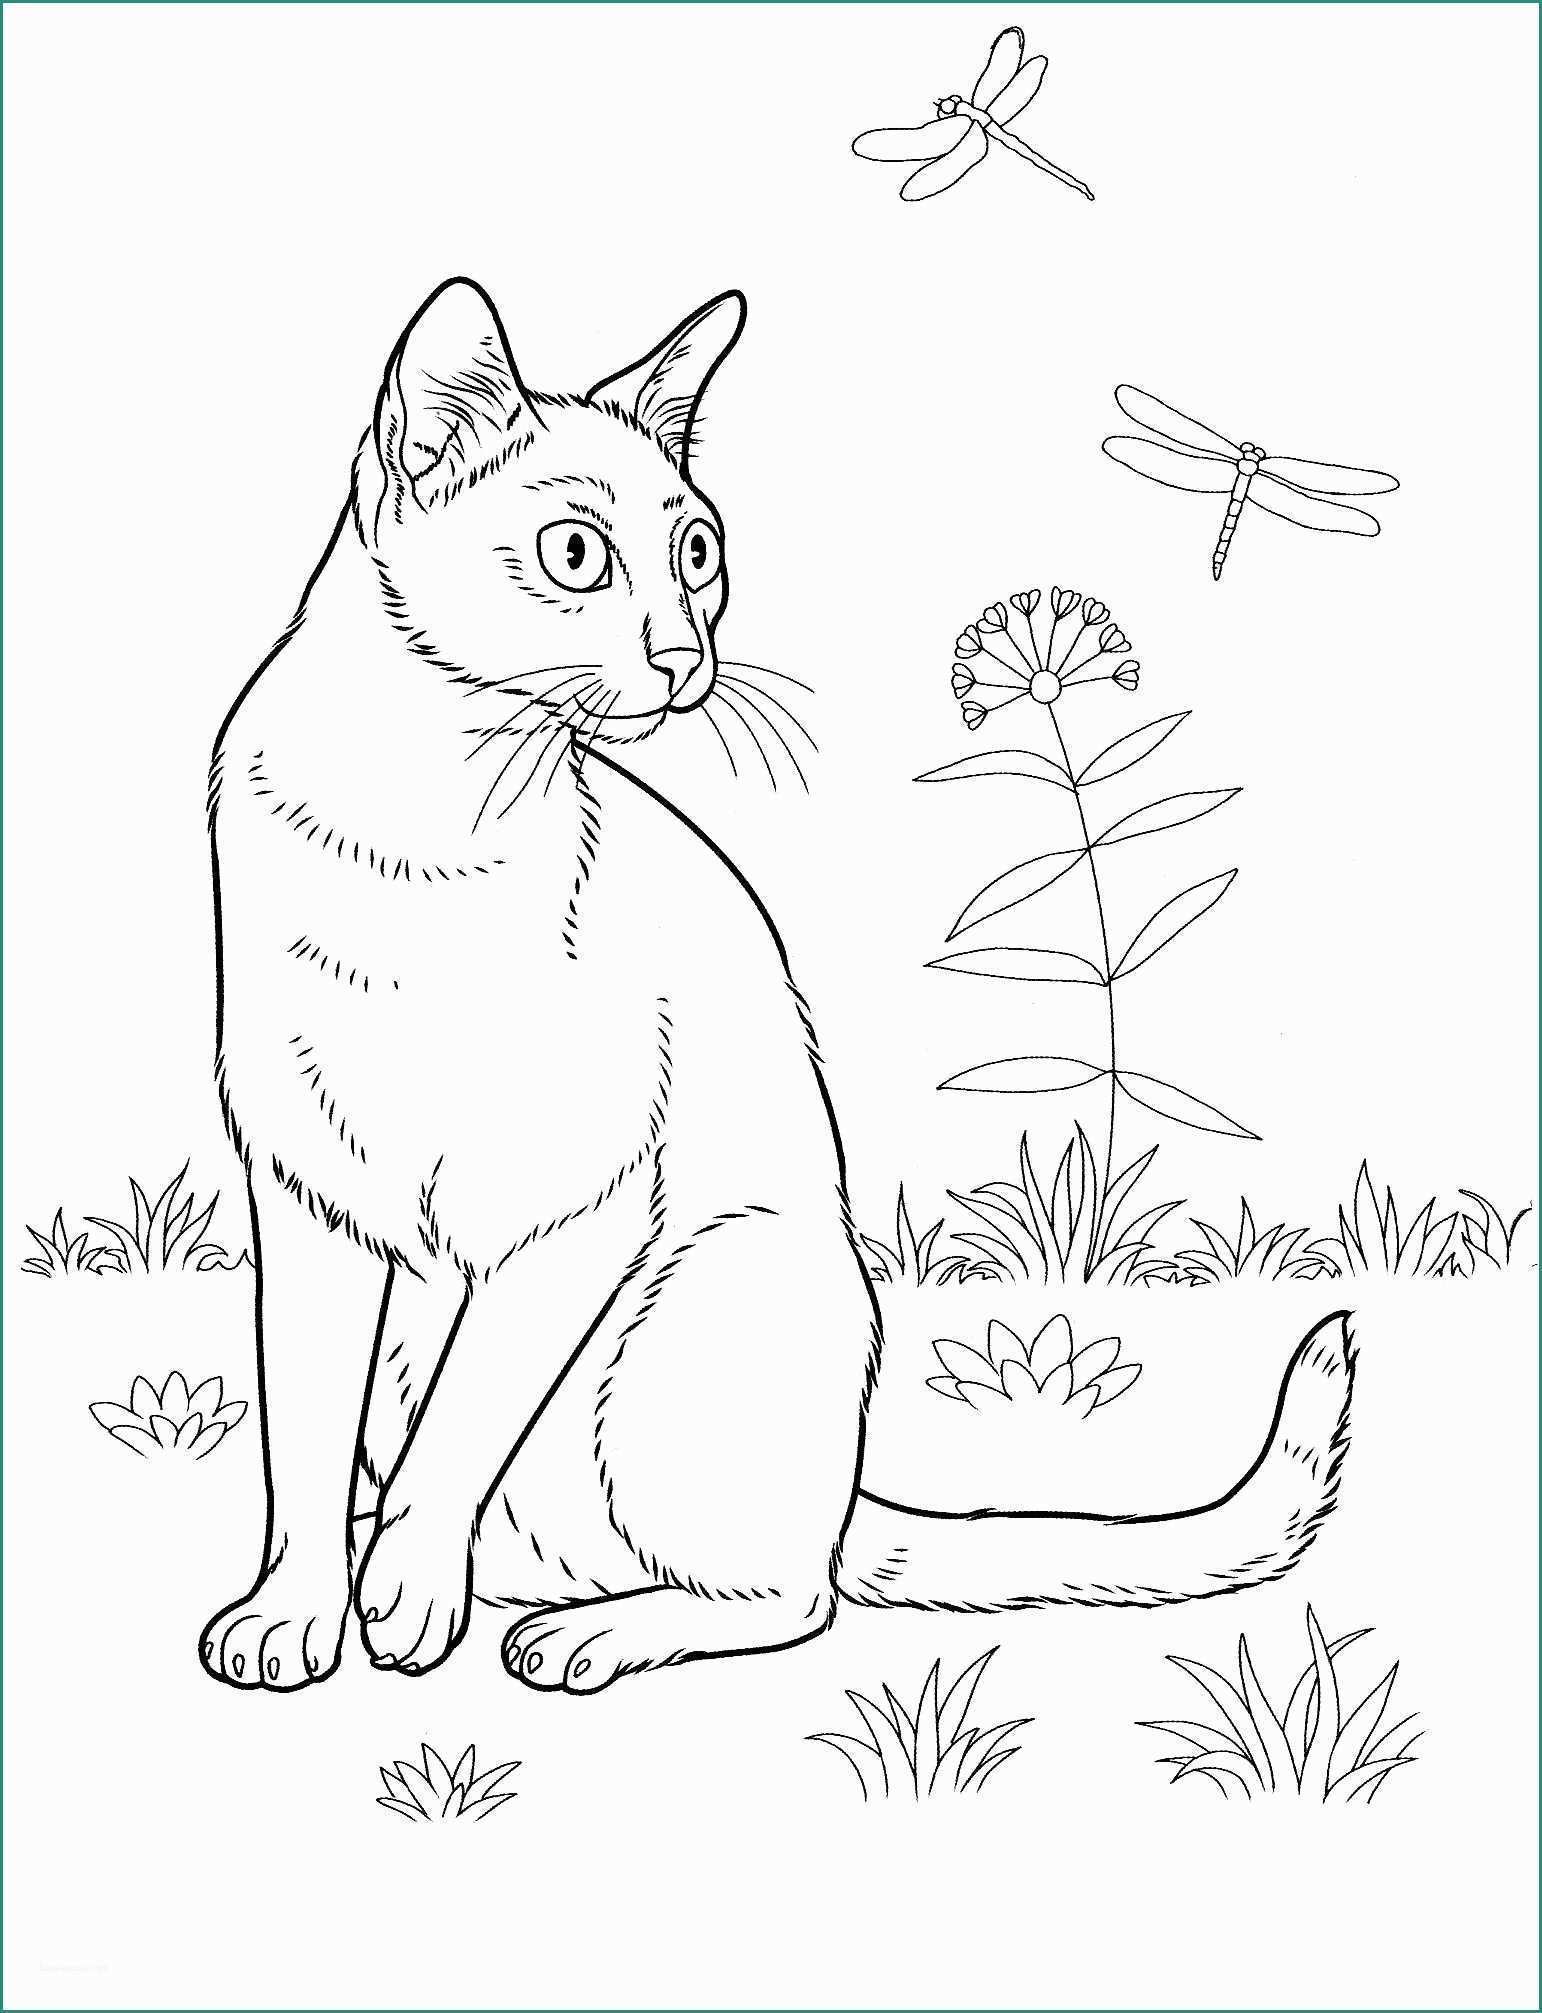 Disegnare Un Gatto E In Alto Disegni Da Colorare Gufo Adulti E Ragazzi